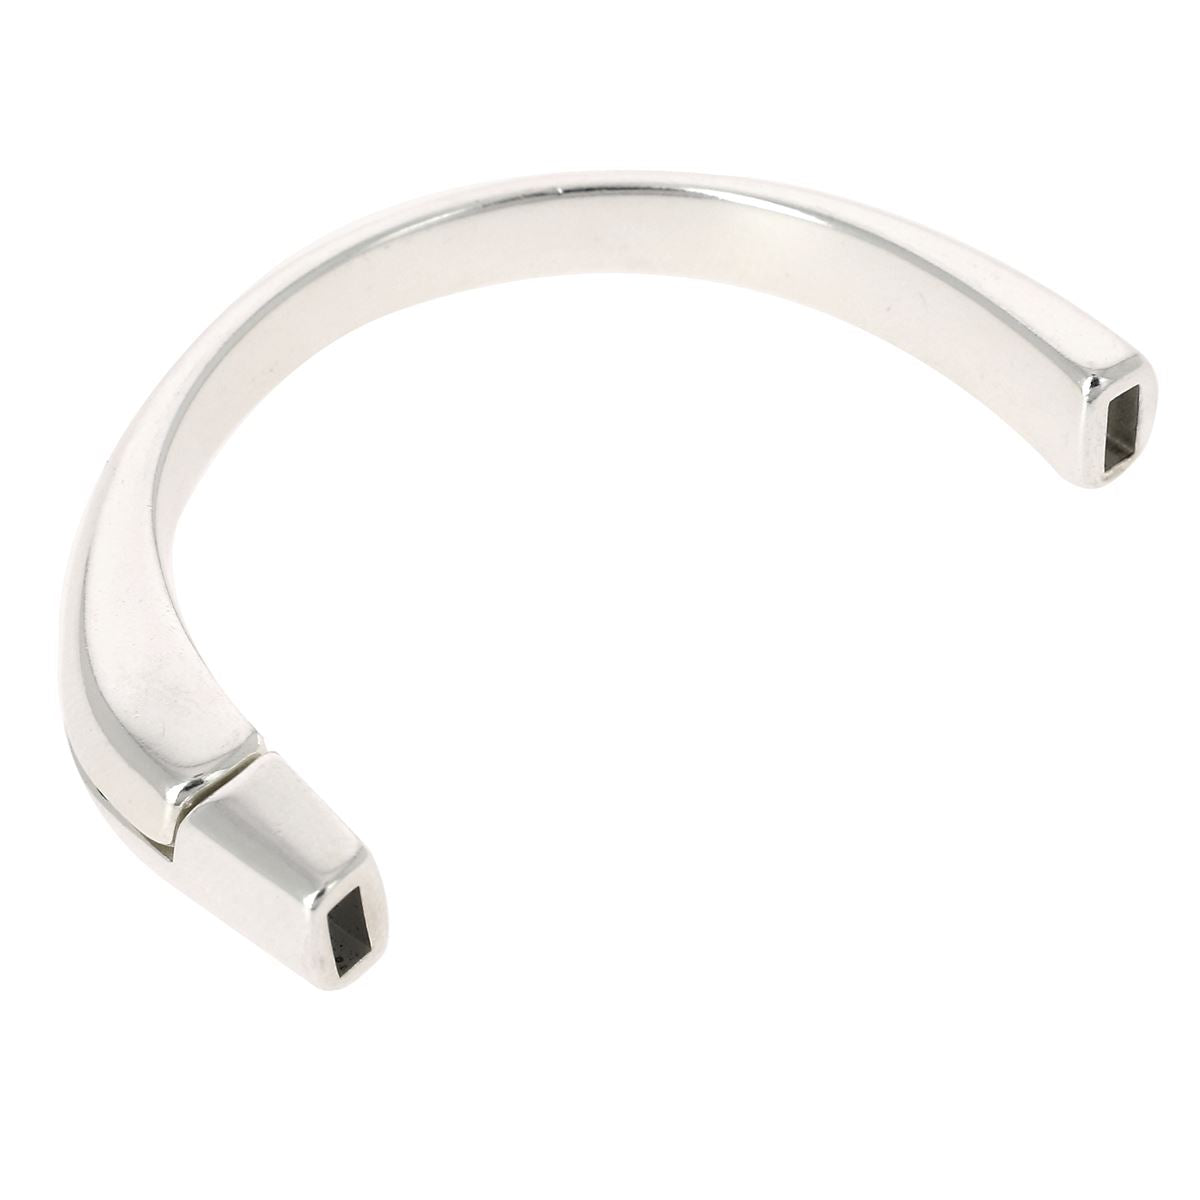 Fermoir magnetique plat argent pour cuir 5mm - Fermoir bracelet